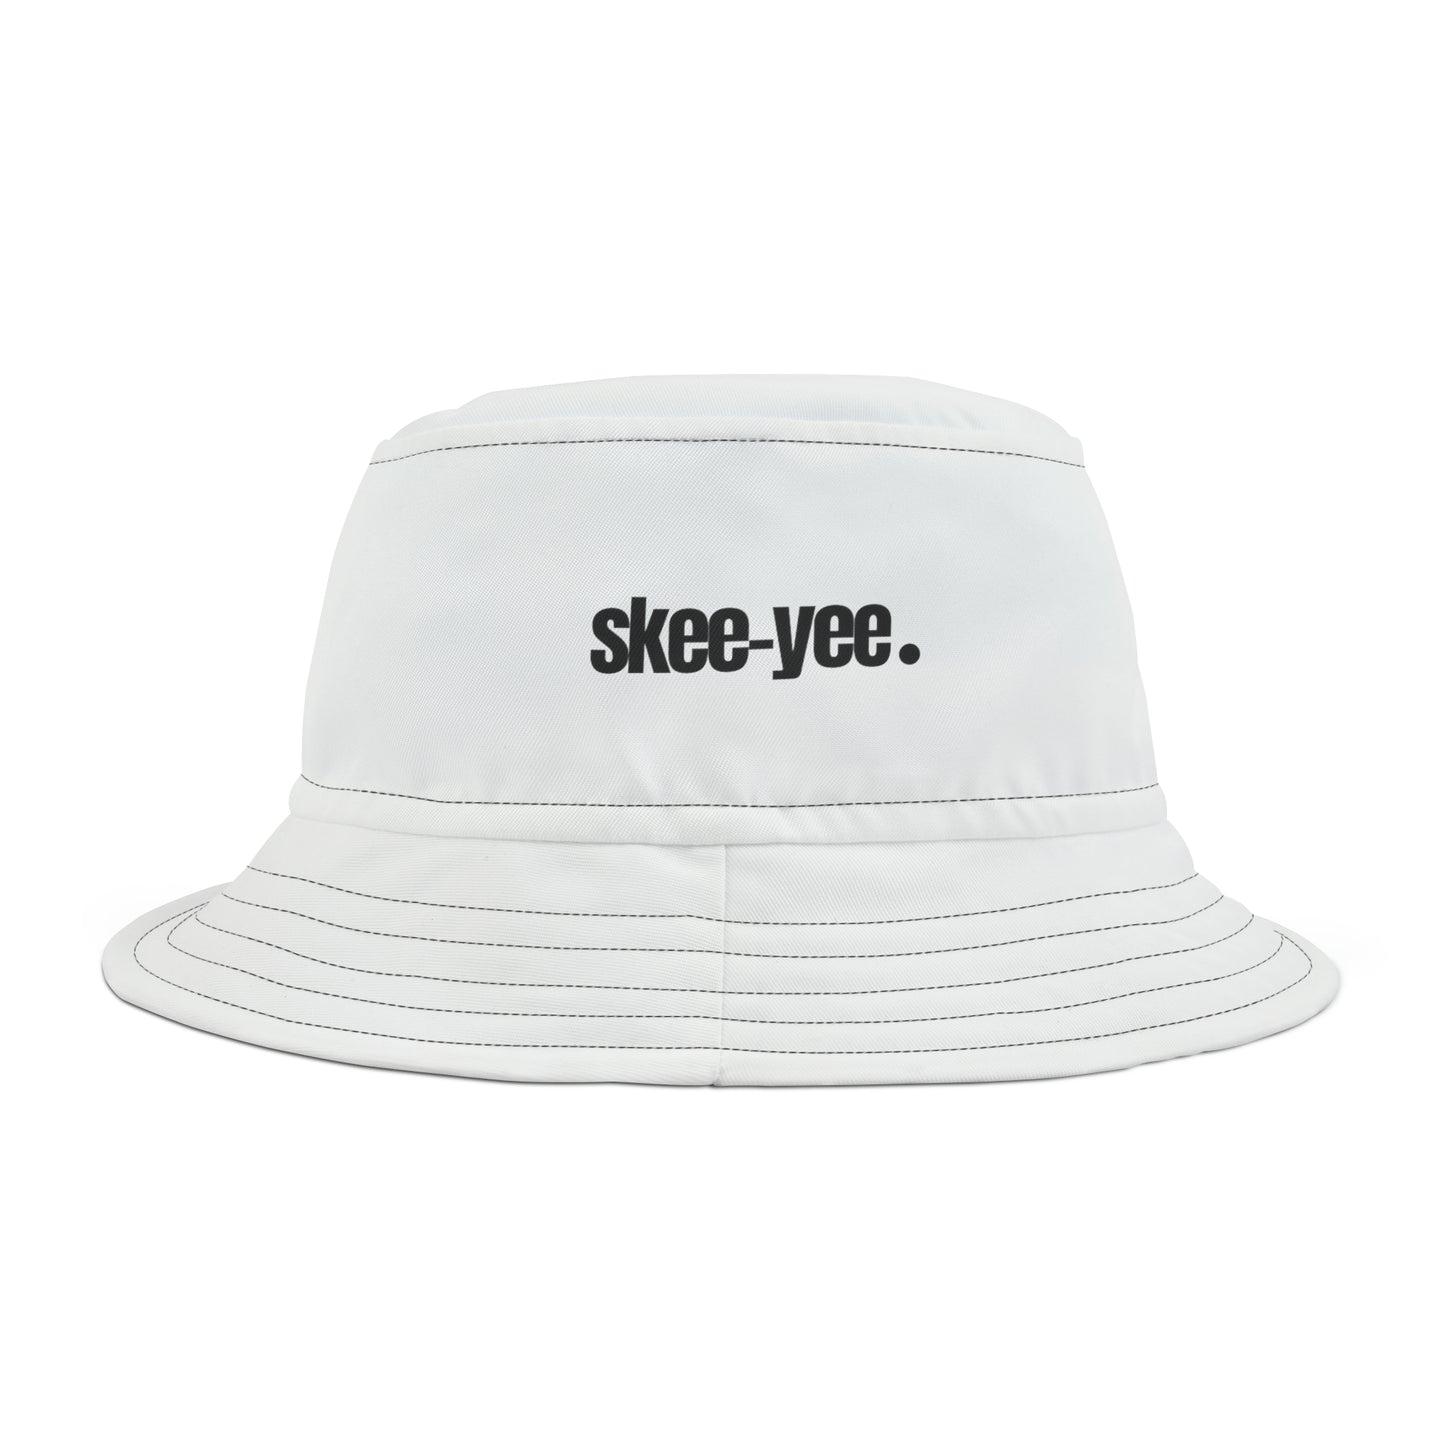 Skee-yee Bucket Hat